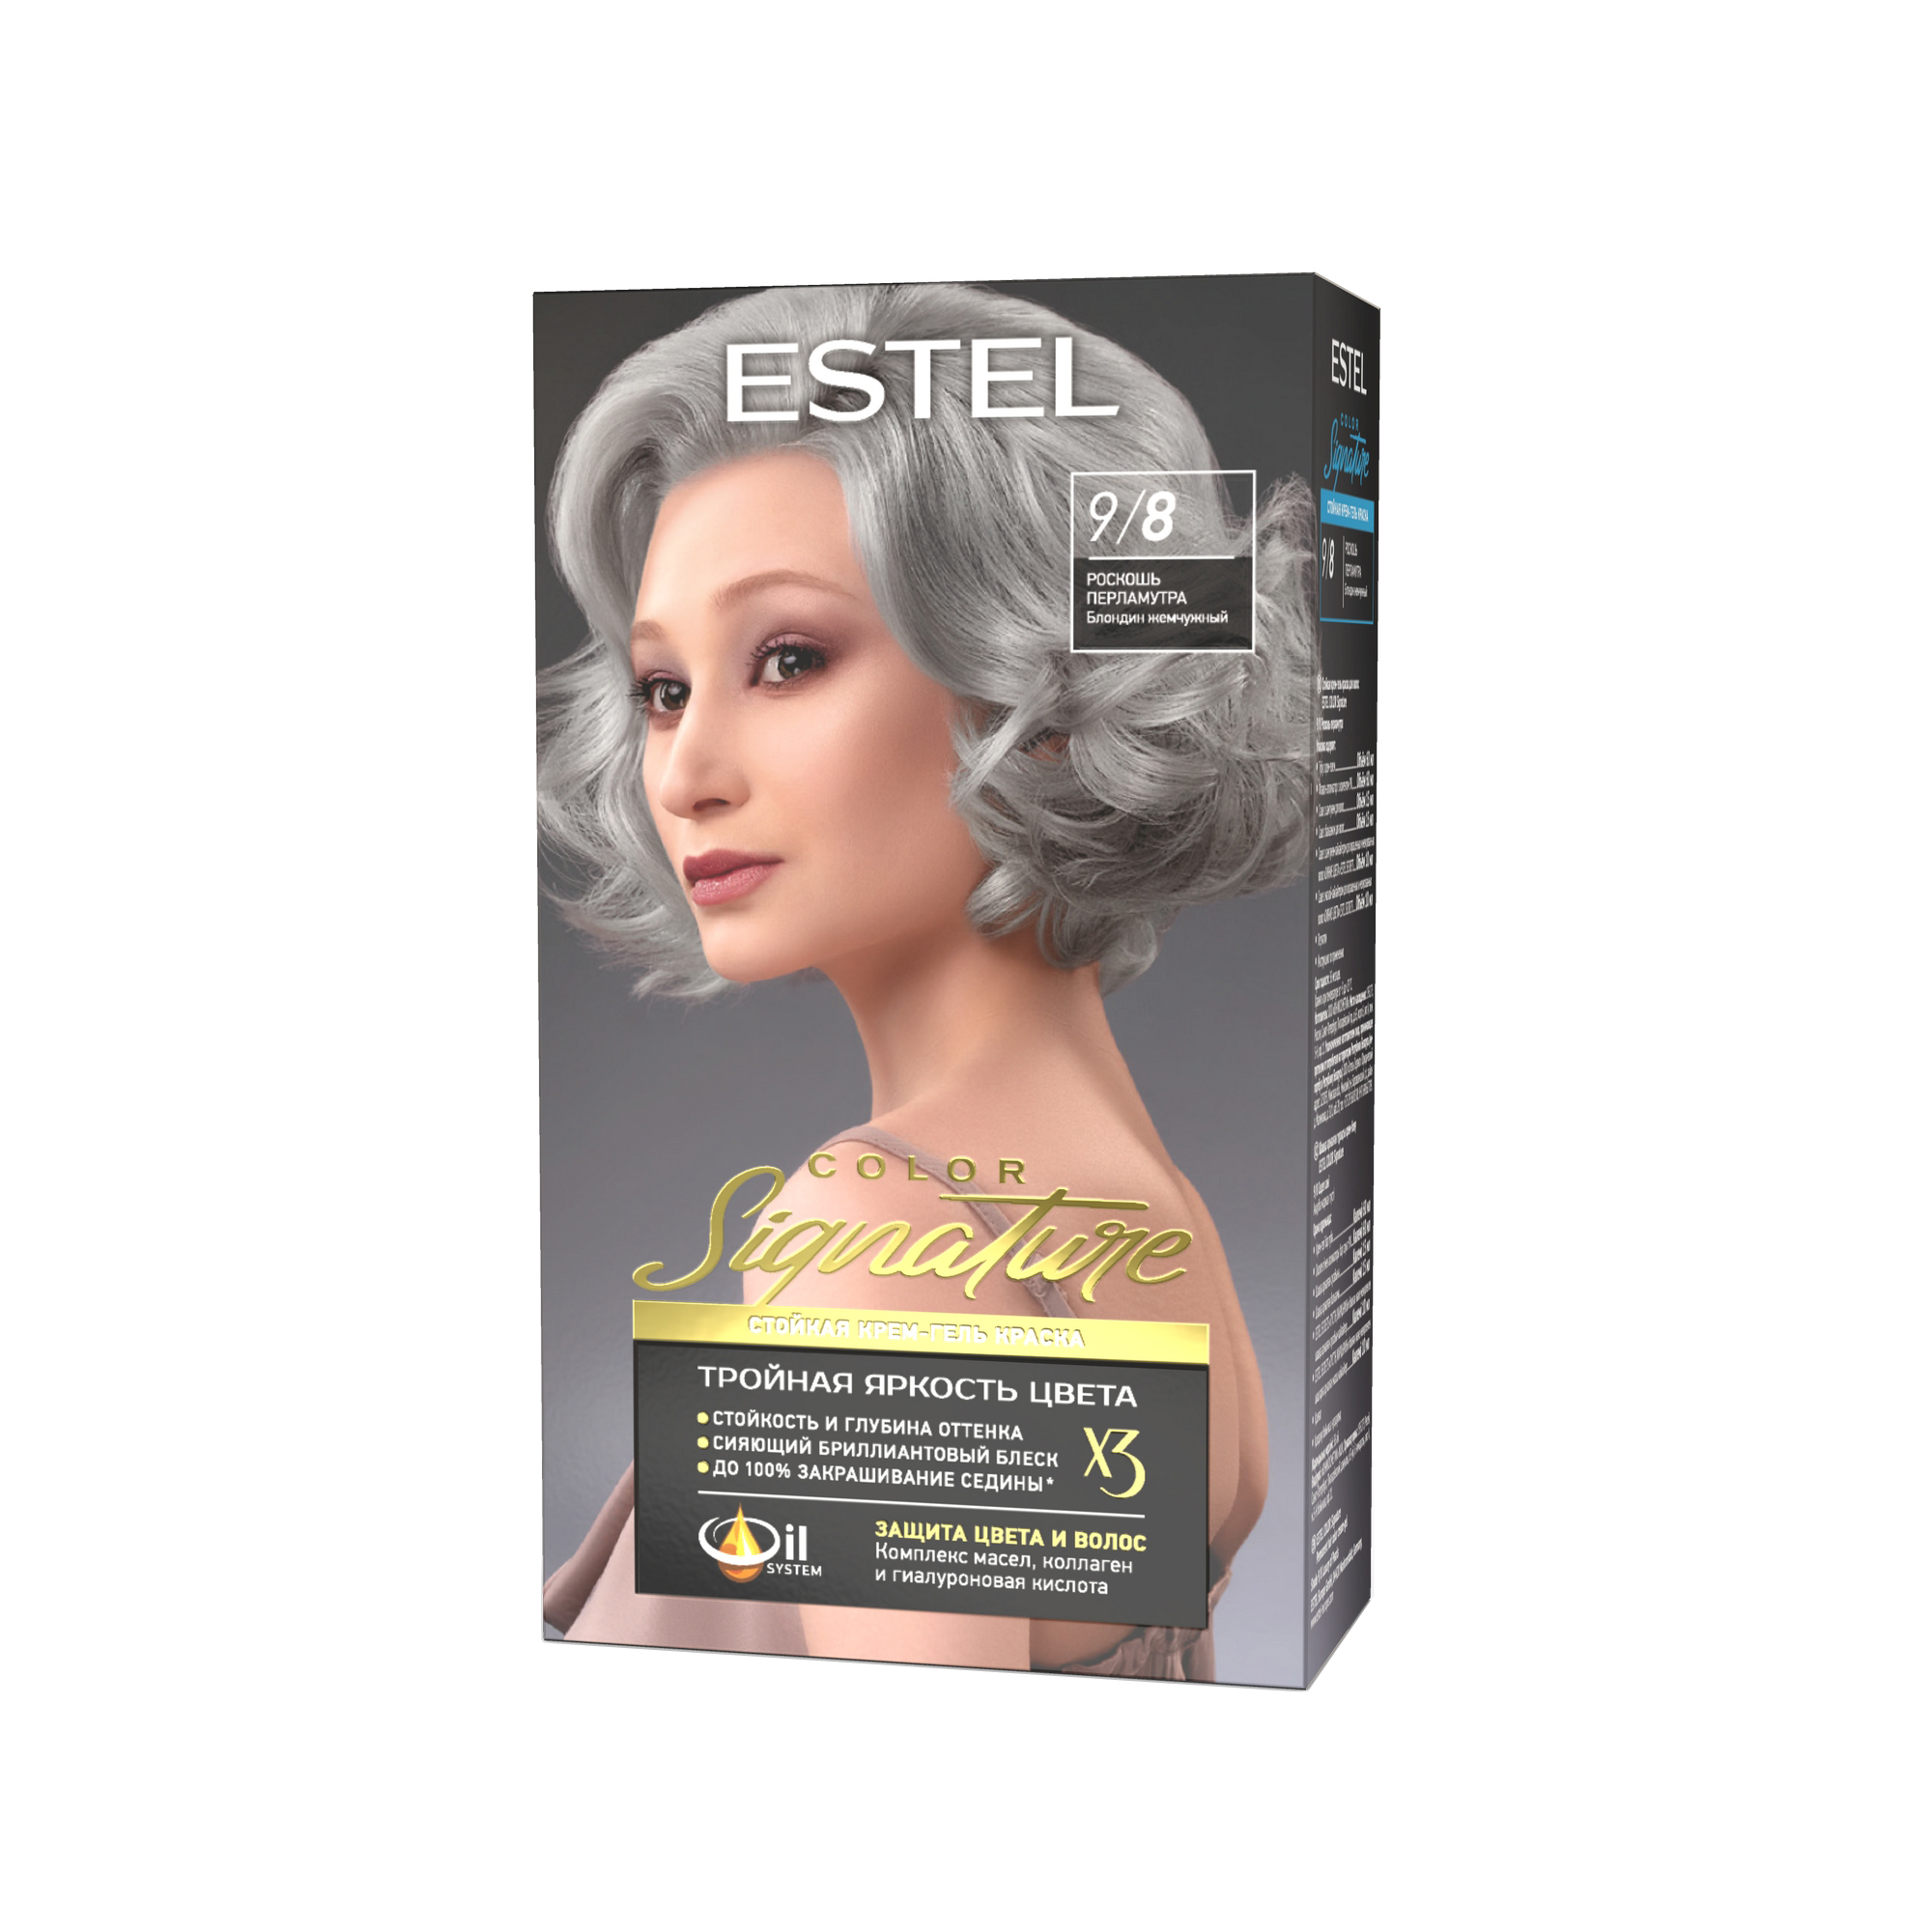 Краска для волос Estel Color Signature тон 9.8 роскошь перламутра - в интернет-магазине TUT-BEAUTY.BY с доставкой.